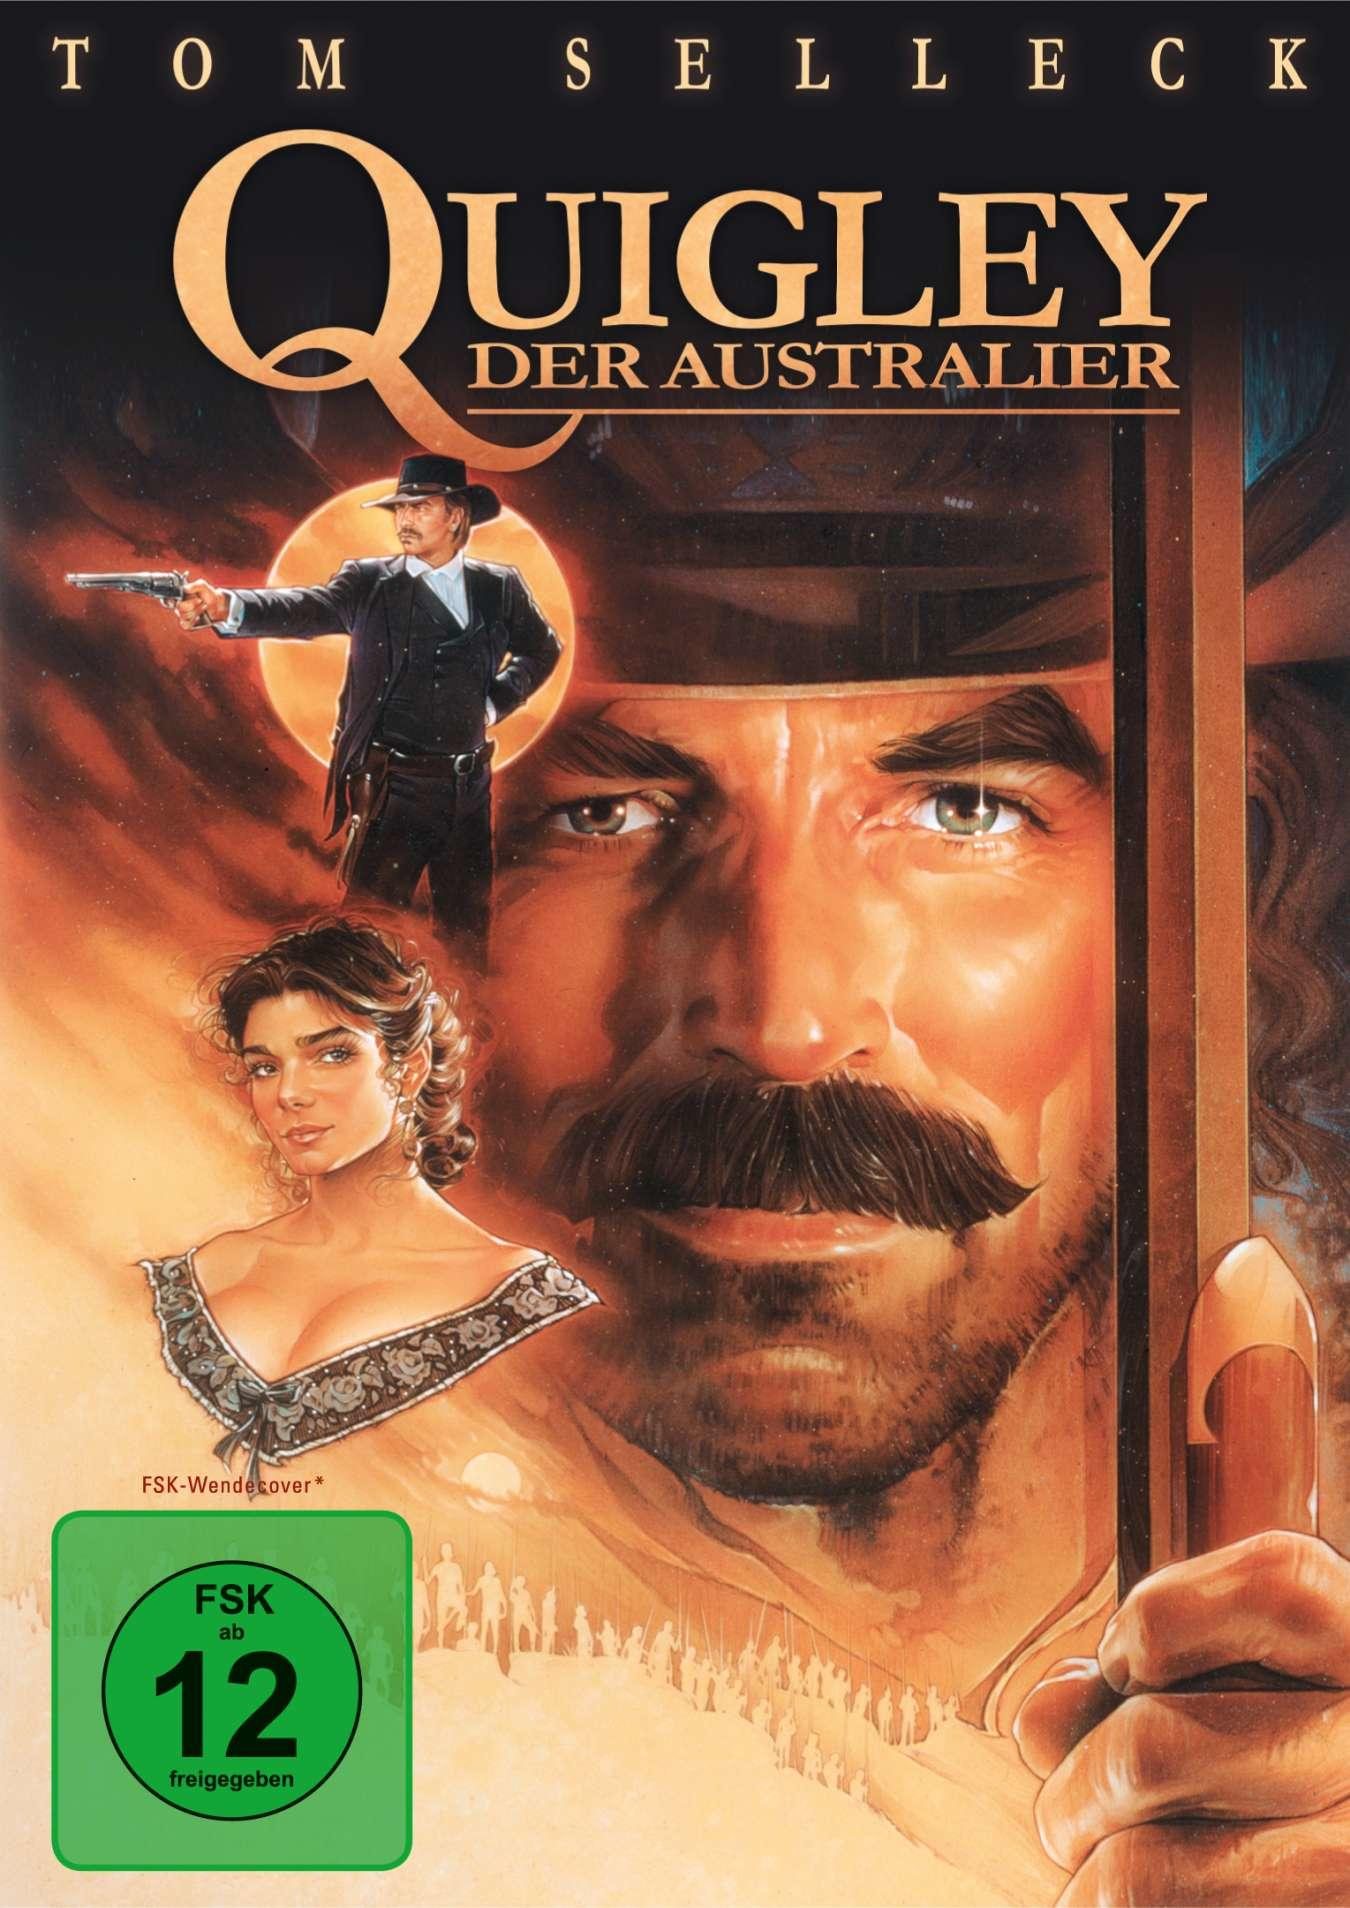 Quigley, Australier DVD der